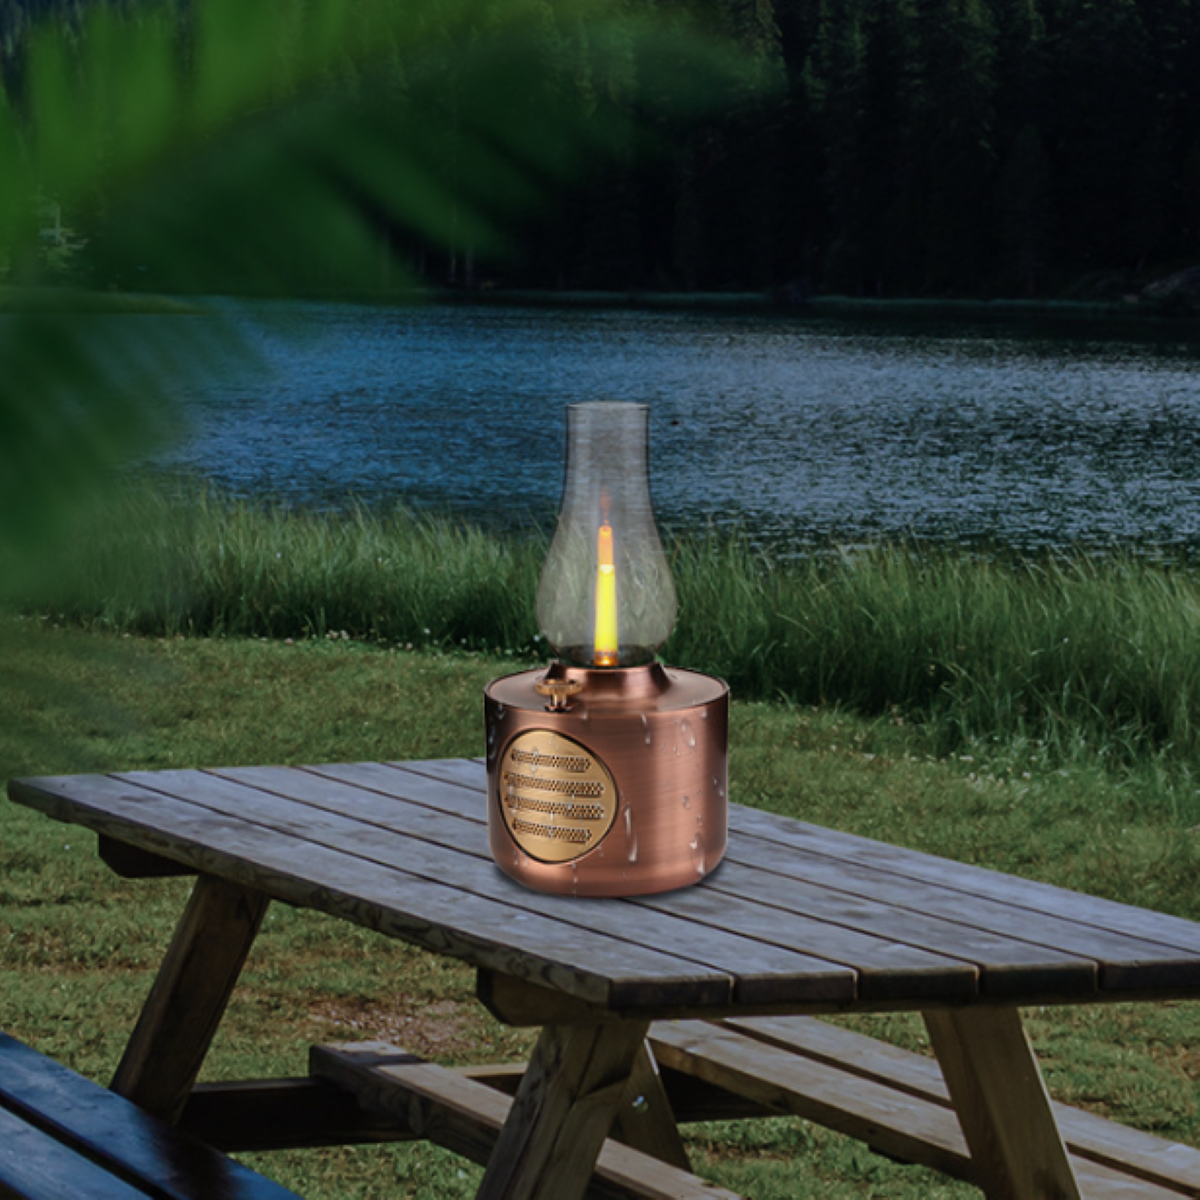 Kerosin spritzwassergeschützt Lautsprecher wasserdicht Bronze bluetooth ENBAOXIN und - Simuliertes Kerzenlicht, Bluetooth-Lautsprecher,